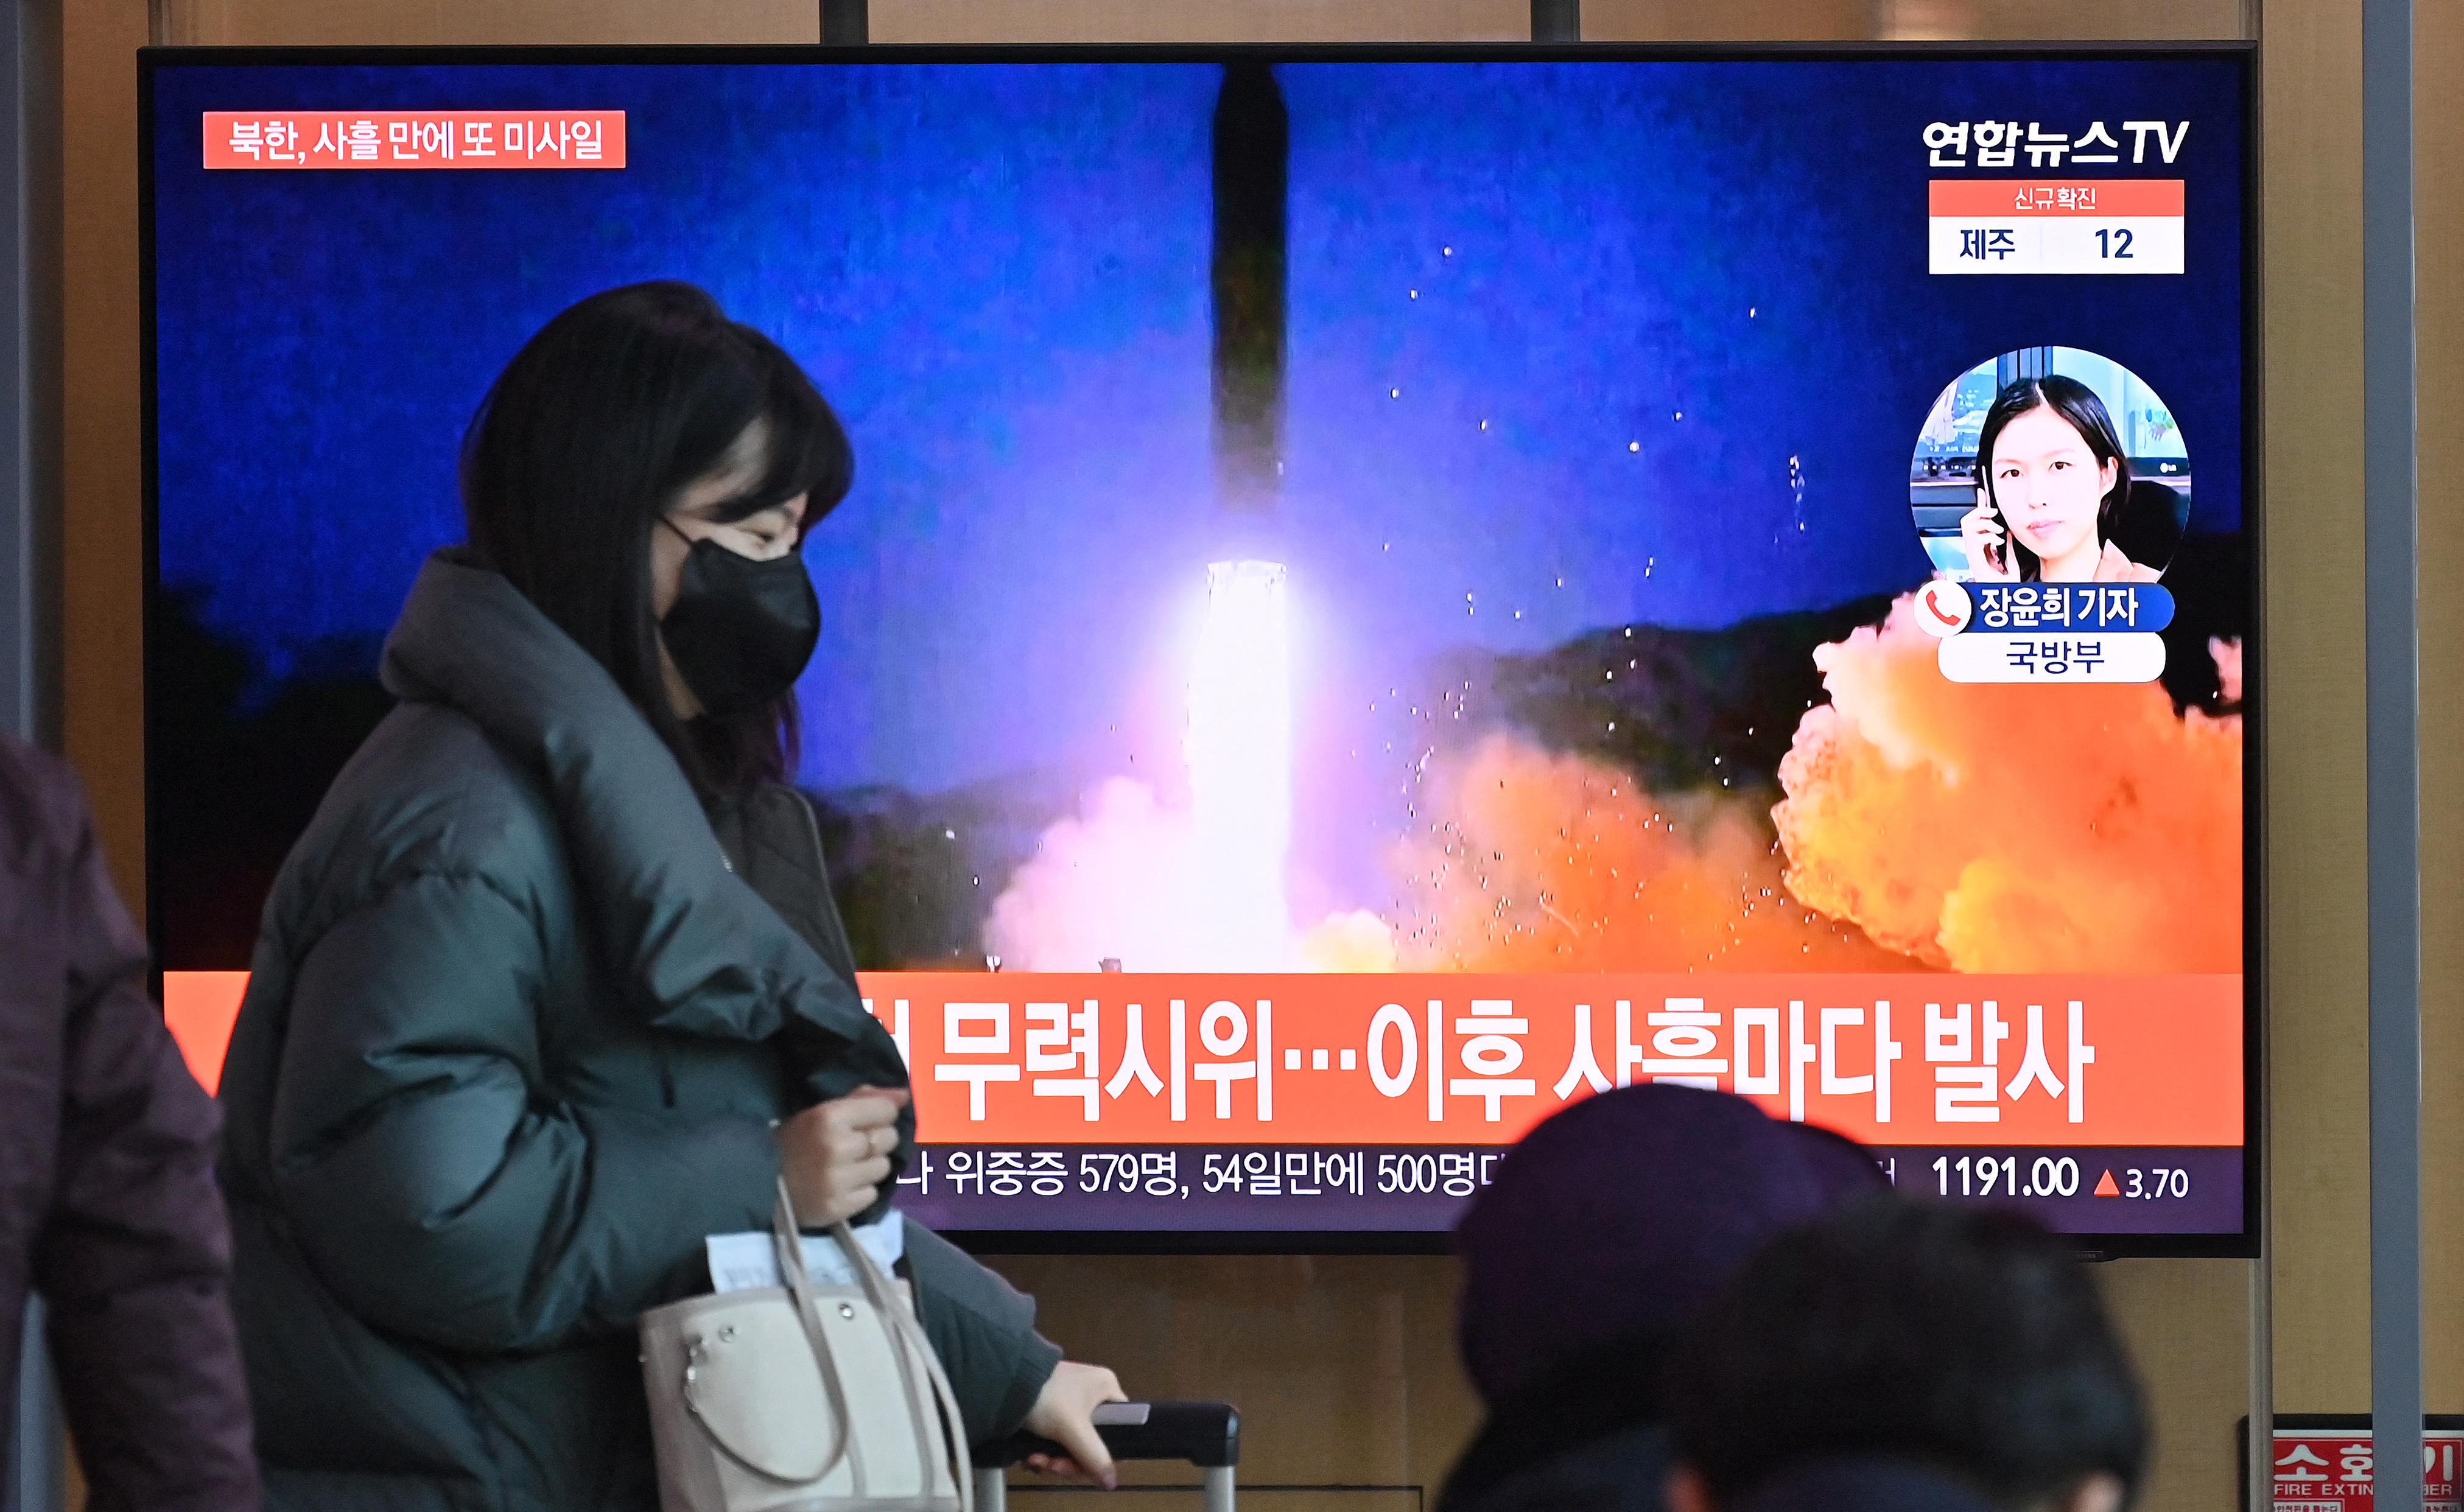 Uma mulher passa por uma tela de televisão mostrando um noticiário com imagens de arquivo de um teste de míssil norte-coreano, em uma estação ferroviária em Seul em 17 de janeiro de 2022, depois que a Coreia do Norte disparou um projétil não identificado para o leste no quarto teste de armas suspeito do país este mês segundo os militares do Sul.